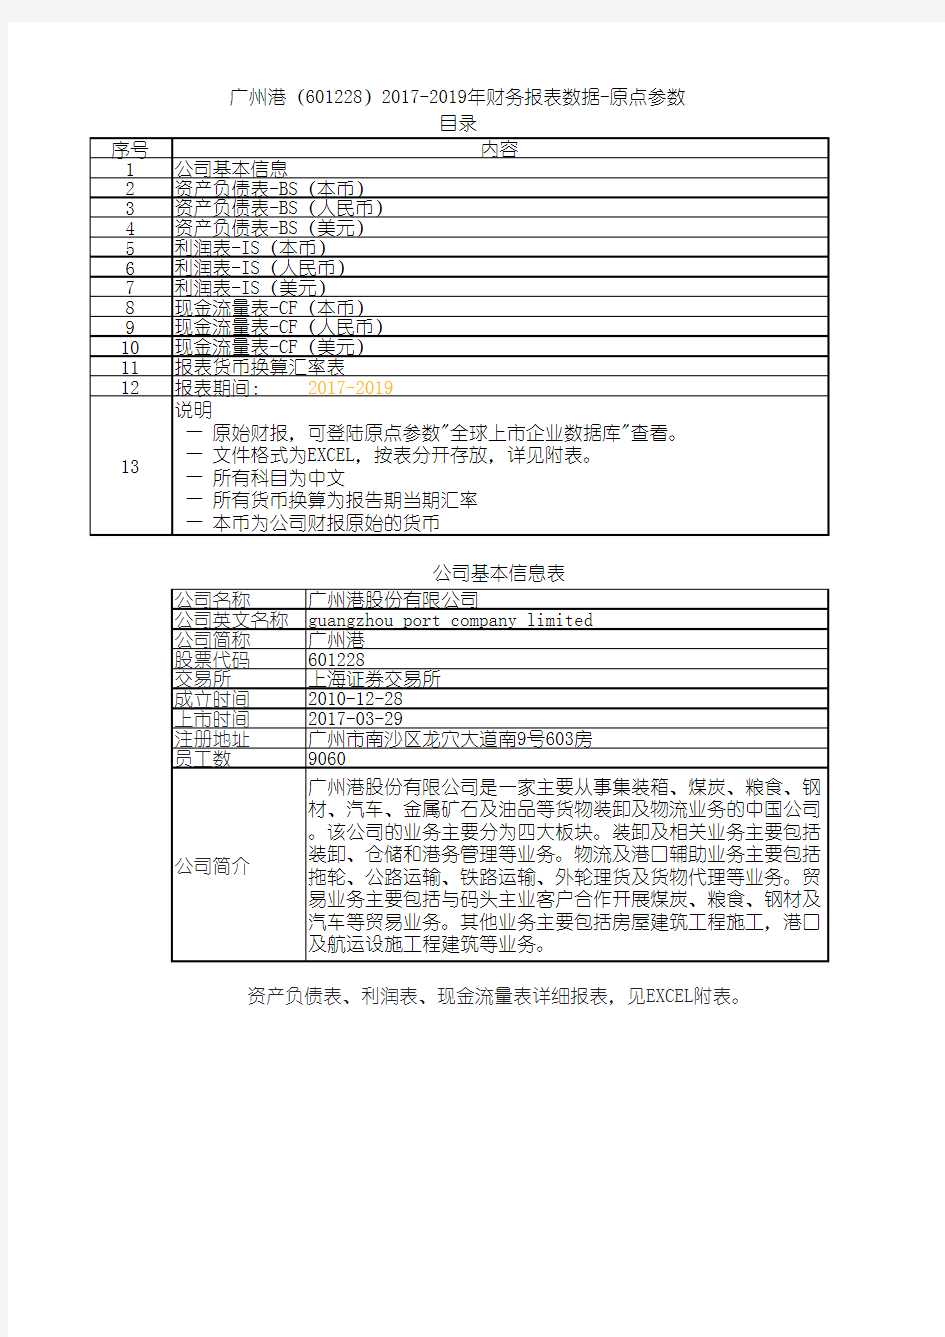 广州港(601228)2017-2019年财务报表数据-原点参数